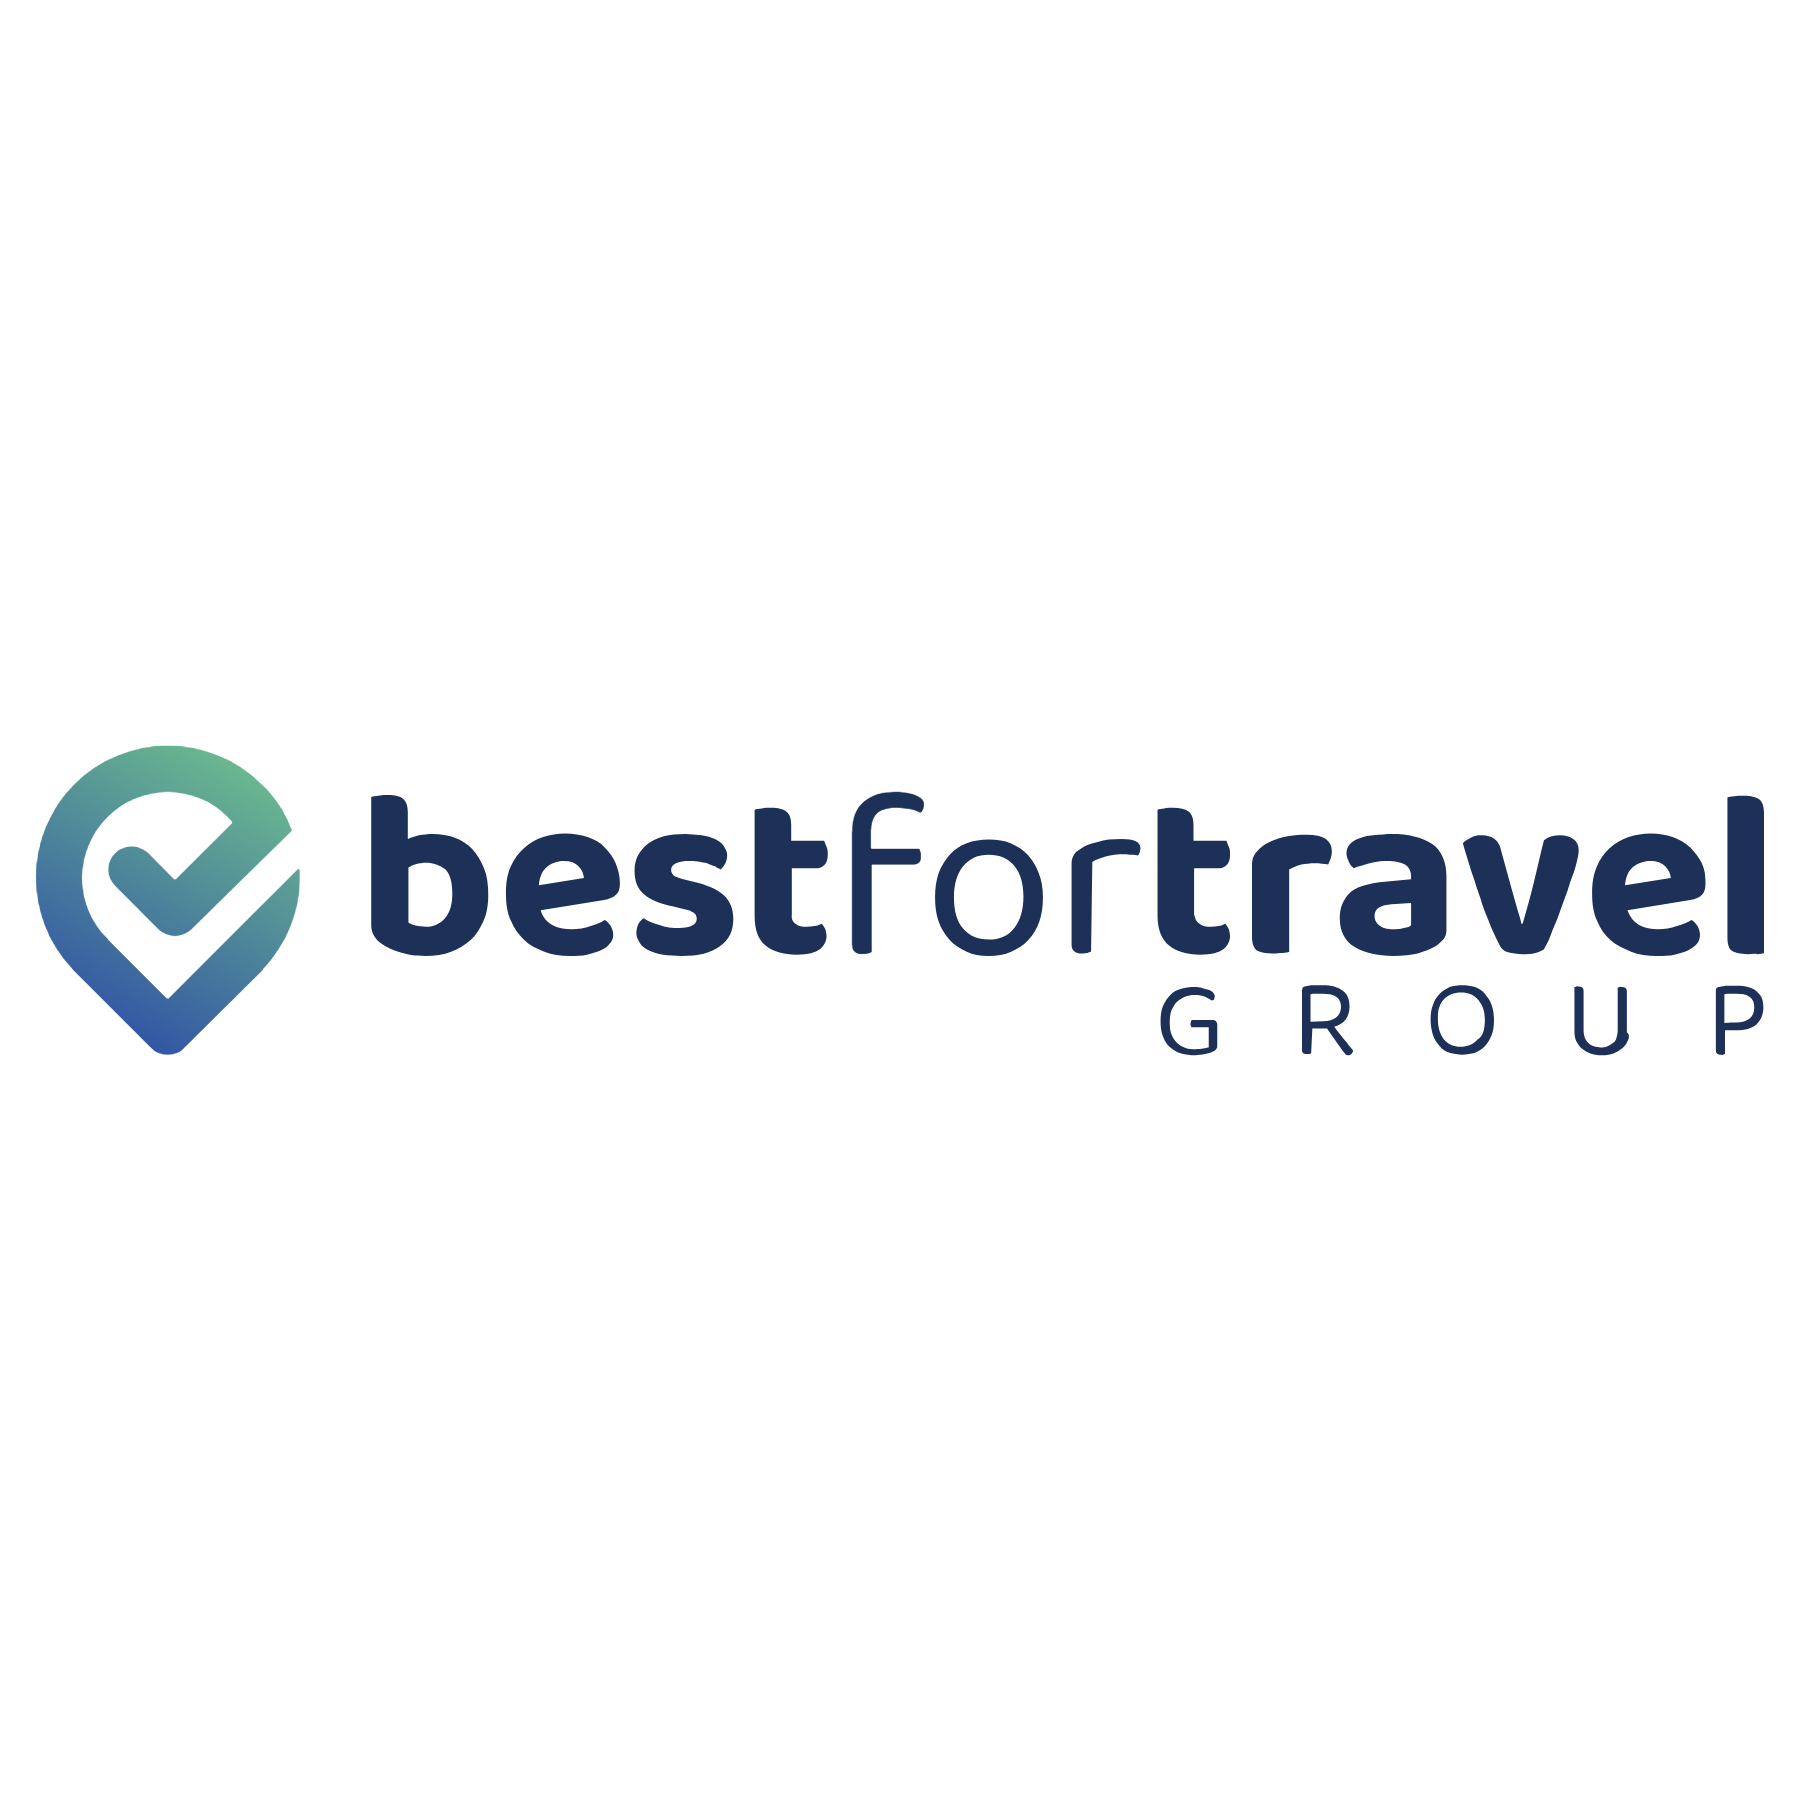 bestfortravel – Reiseanbieter für Rundreisen, Events und Kreuzfahrten